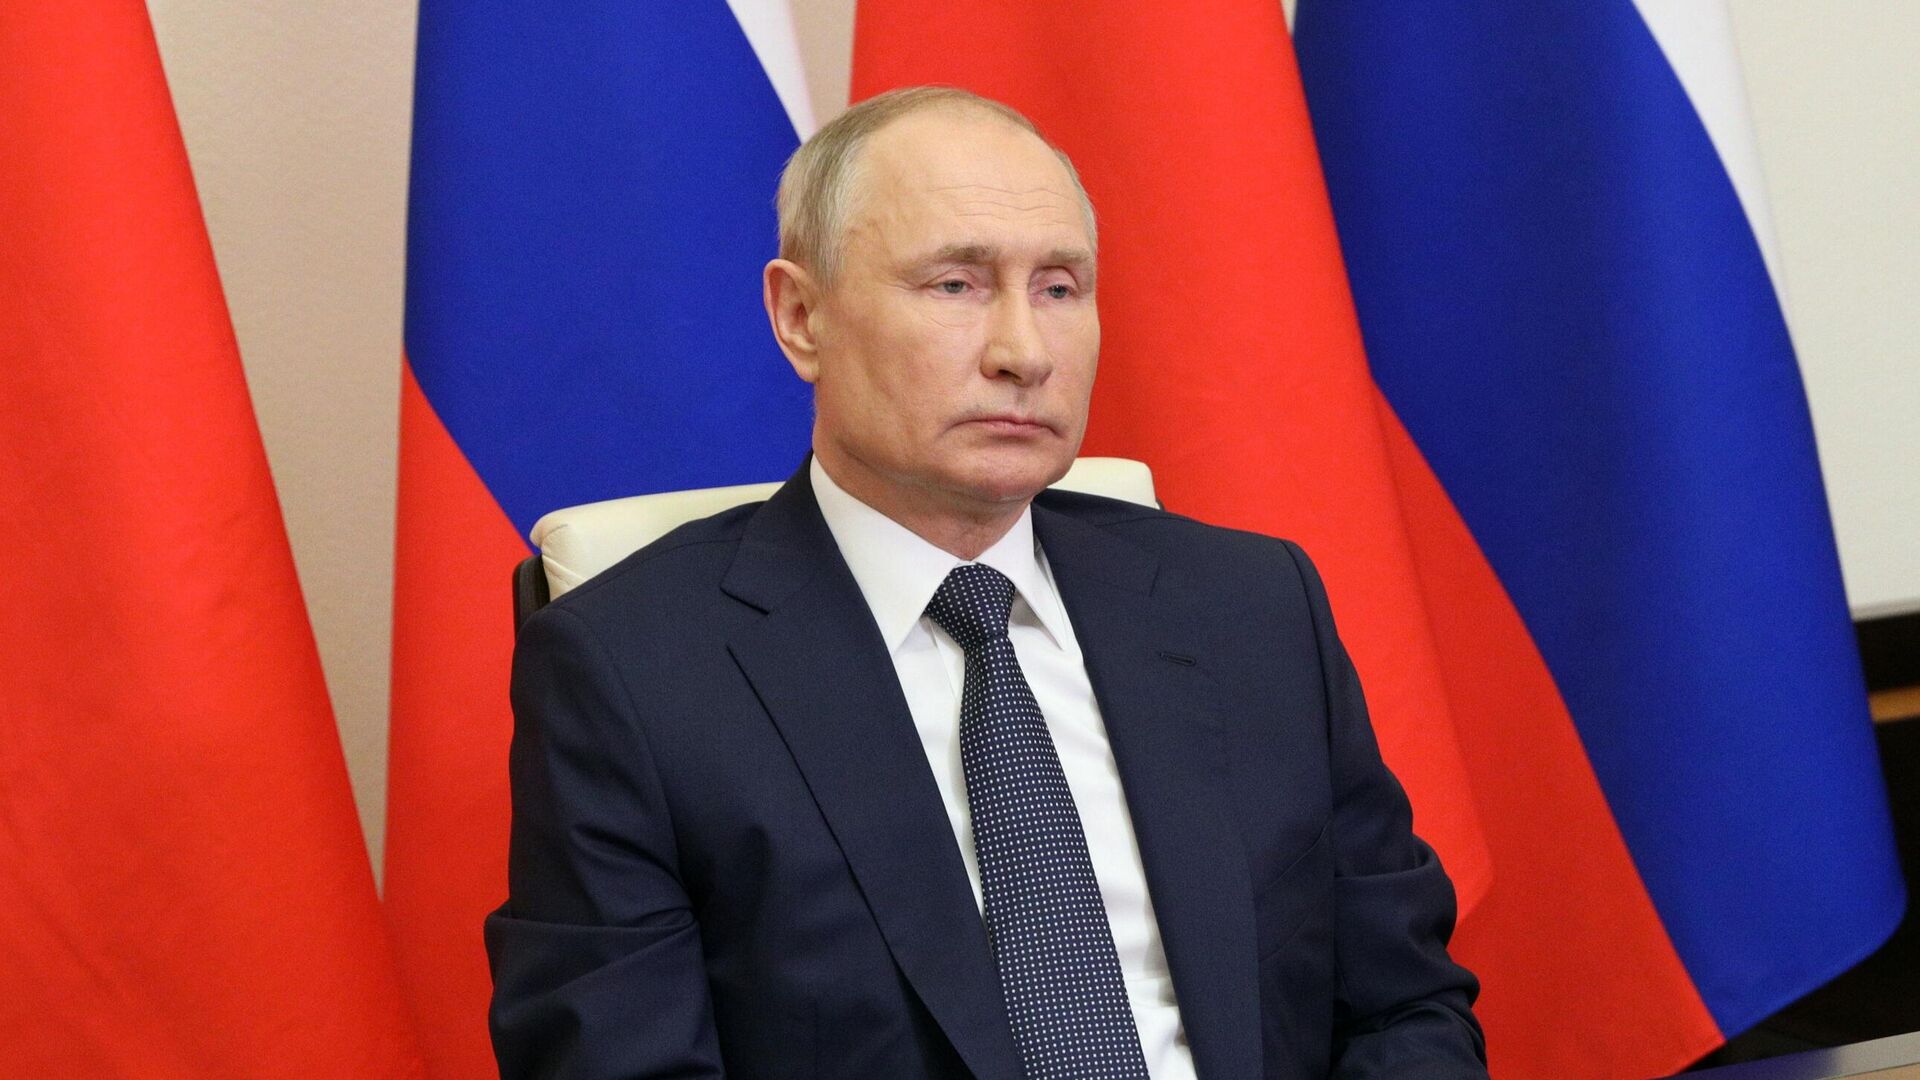 Регионы должны иметь возможность получить льготные кредиты, заявил Путин